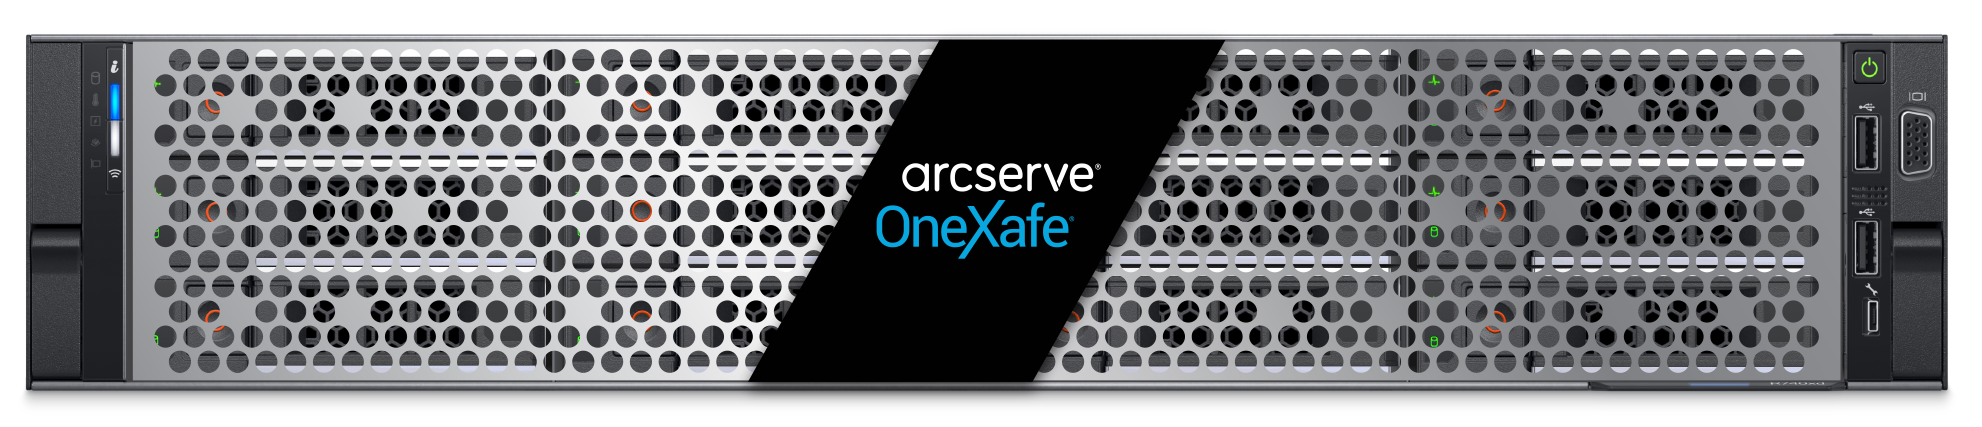 Arcserve OneXafe 4500 シリーズ